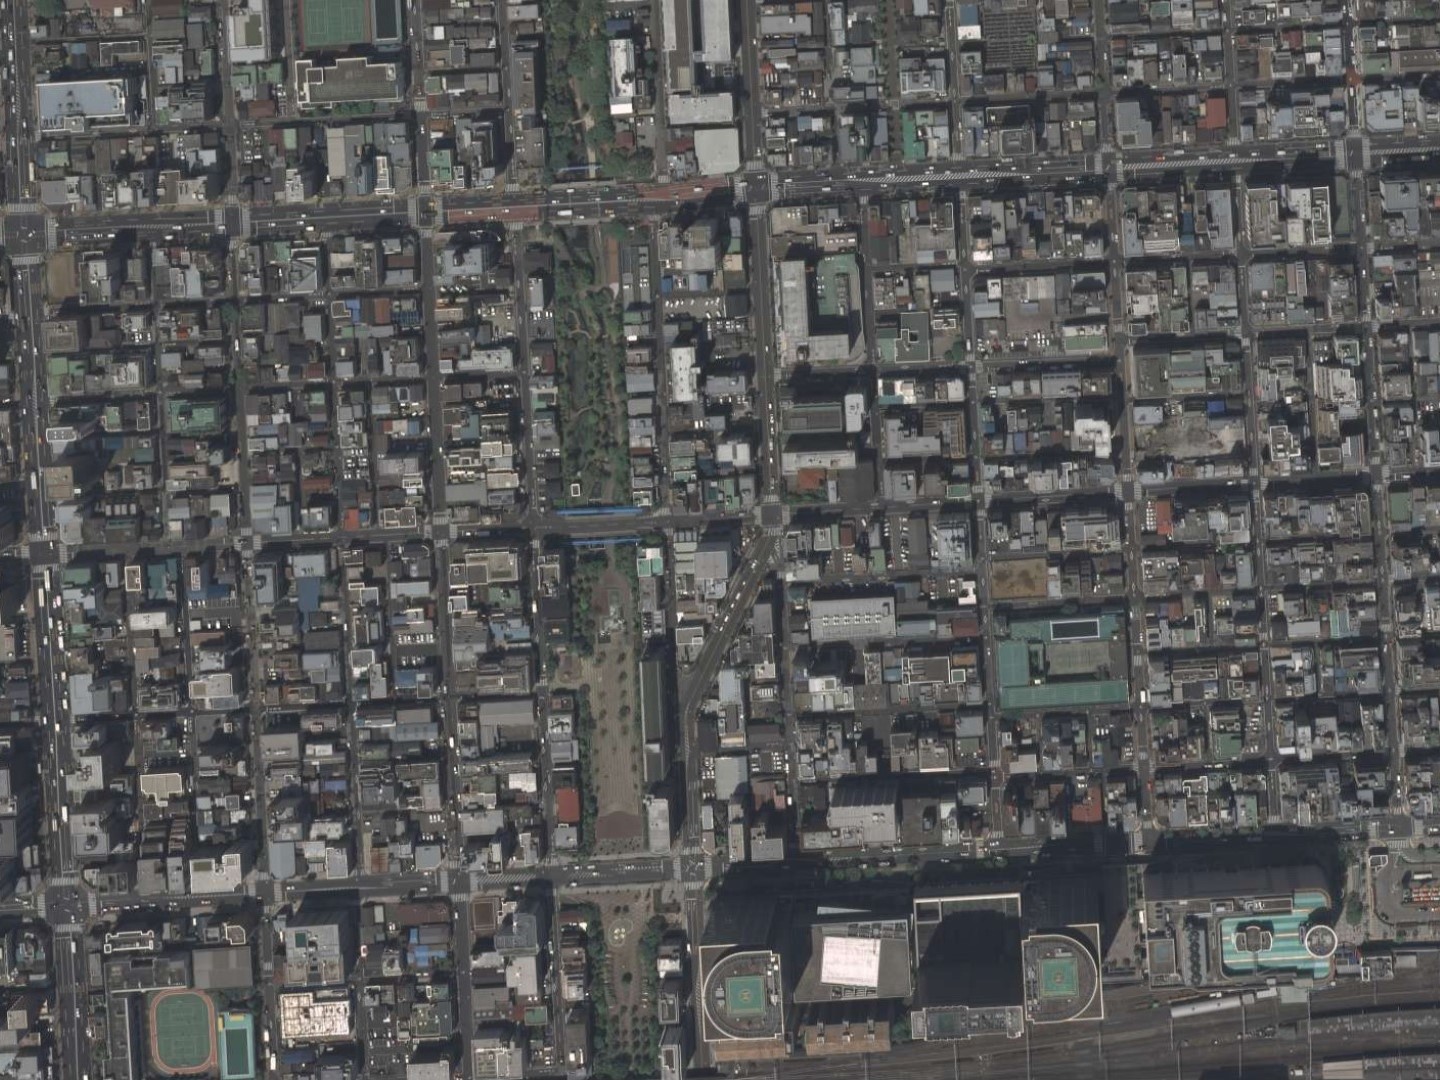 勝山藩下屋敷跡付近、平成21年撮影空中写真（国土地理院Webサイトより、CKT20092-C51-13〔部分〕） の画像。